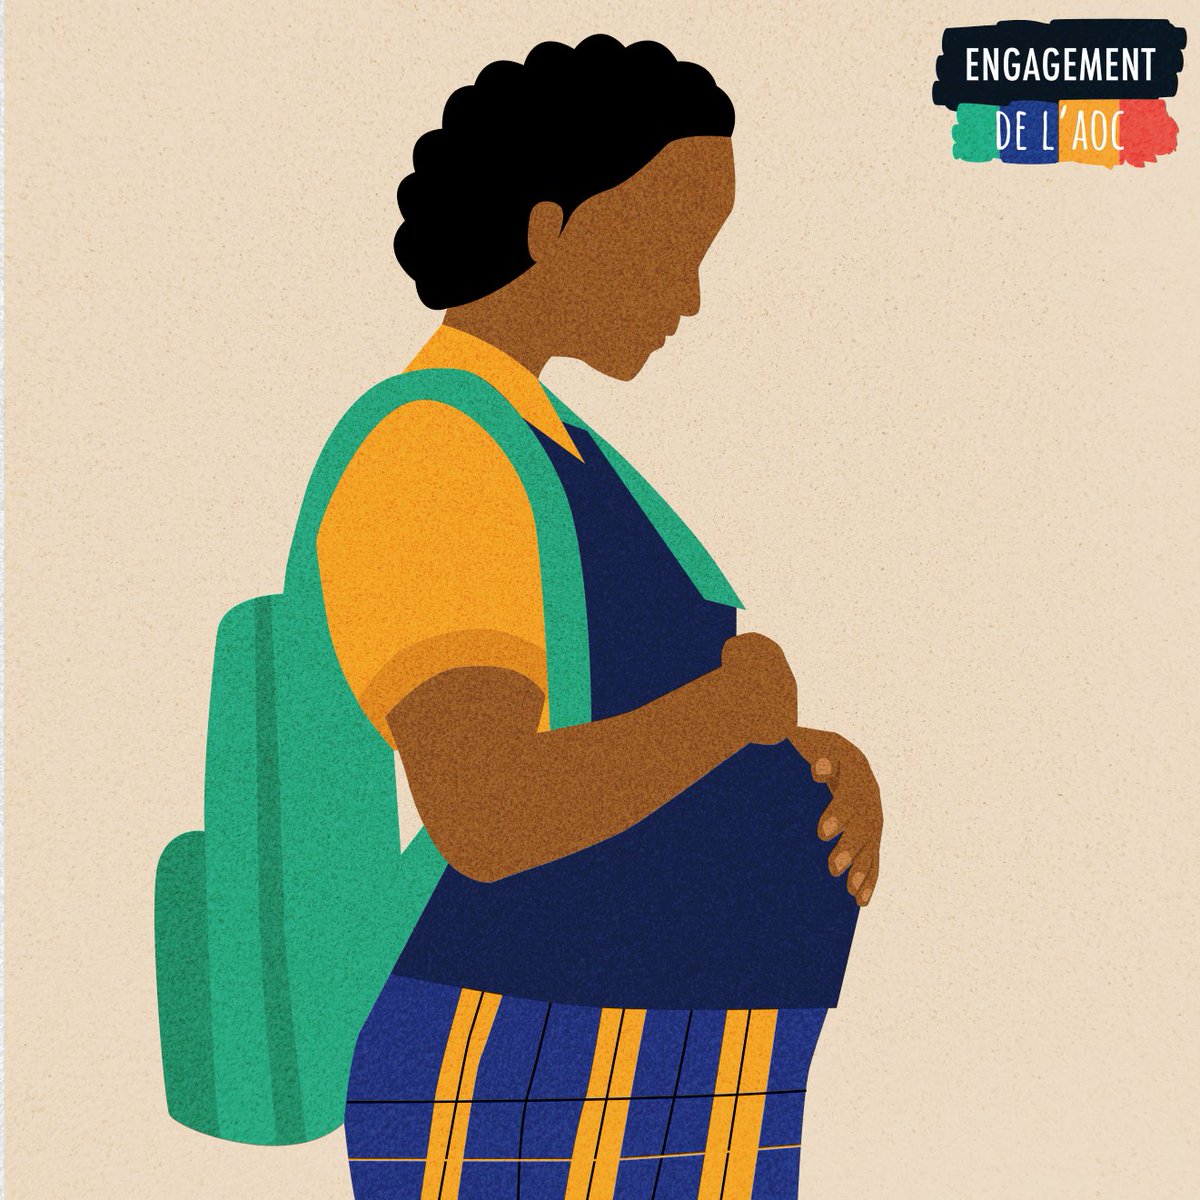 Les gouvernement de l'AOC s'engagent 🤝à protéger les adolescents et les jeunes contre : ✅ des grossesses précoces et non intentionnelles ✅de la VBG ✅du VIH par une éducation et des services de santé de qualité. #EngagementAOC #LéducationSauveDesVies #Anniversaire1an